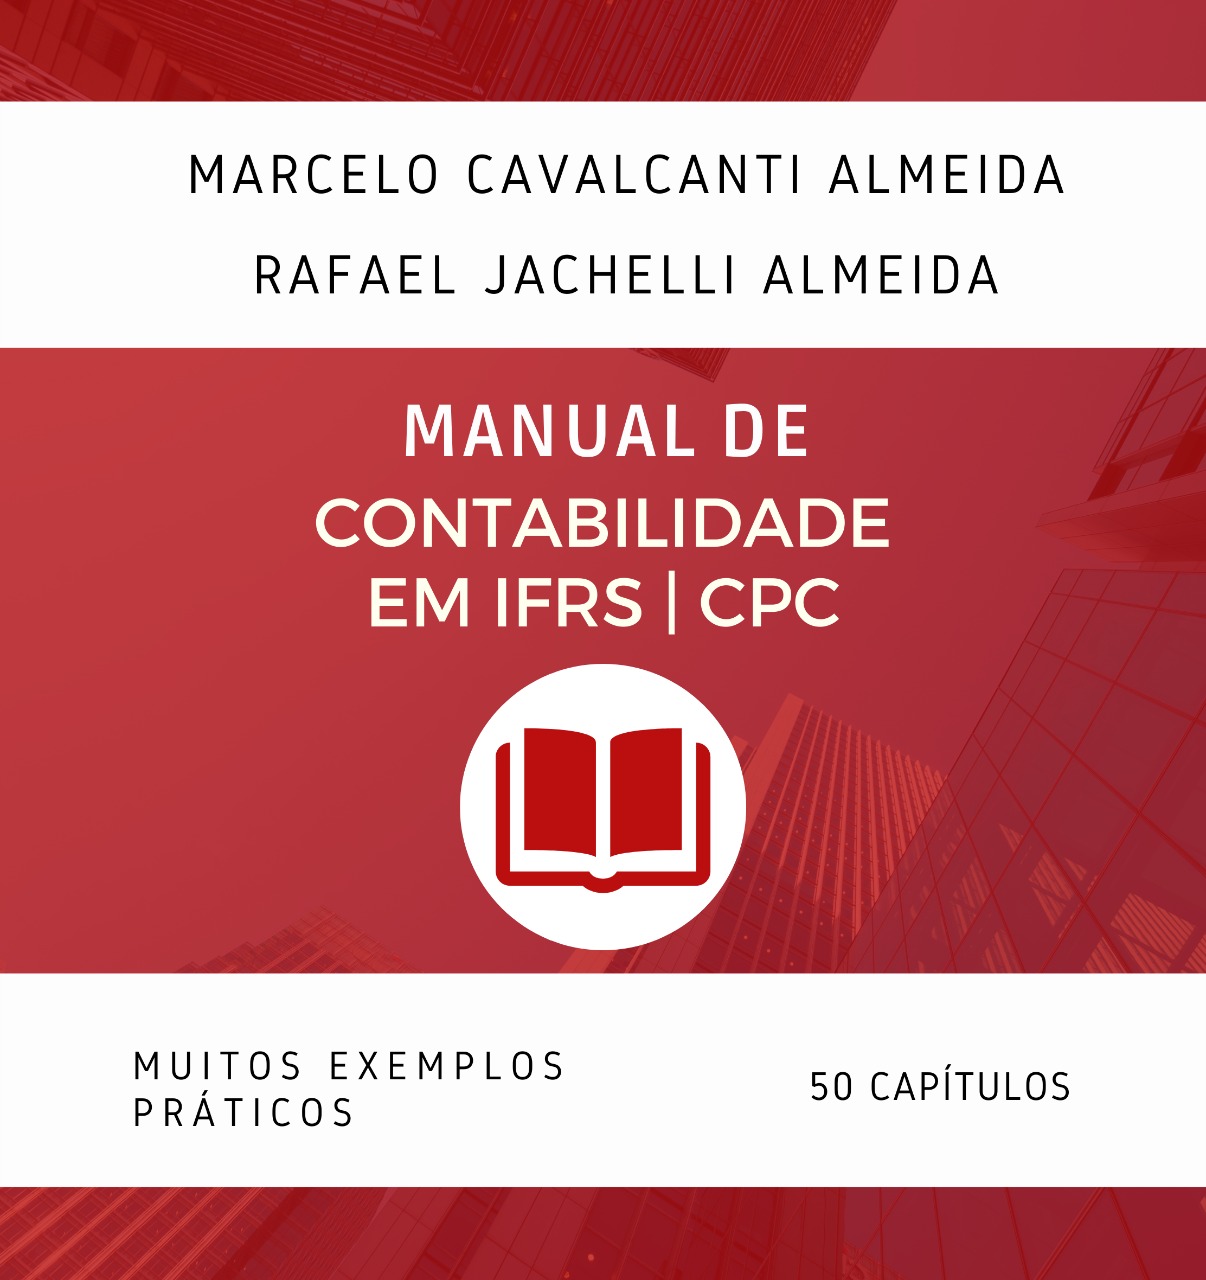 Manual de Contabilidade em IFRS CPC